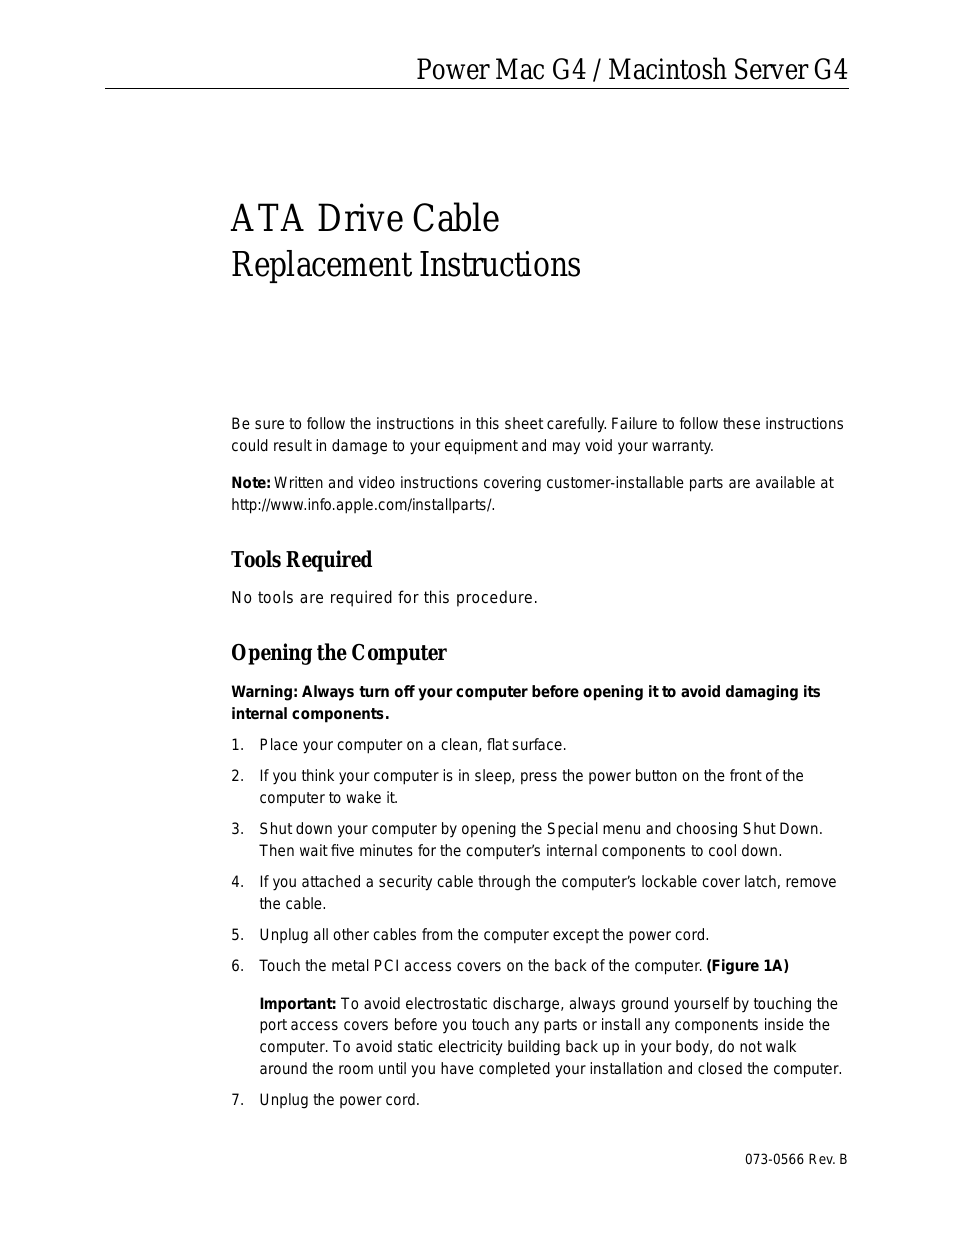 ATA Drive Cable Mac G4